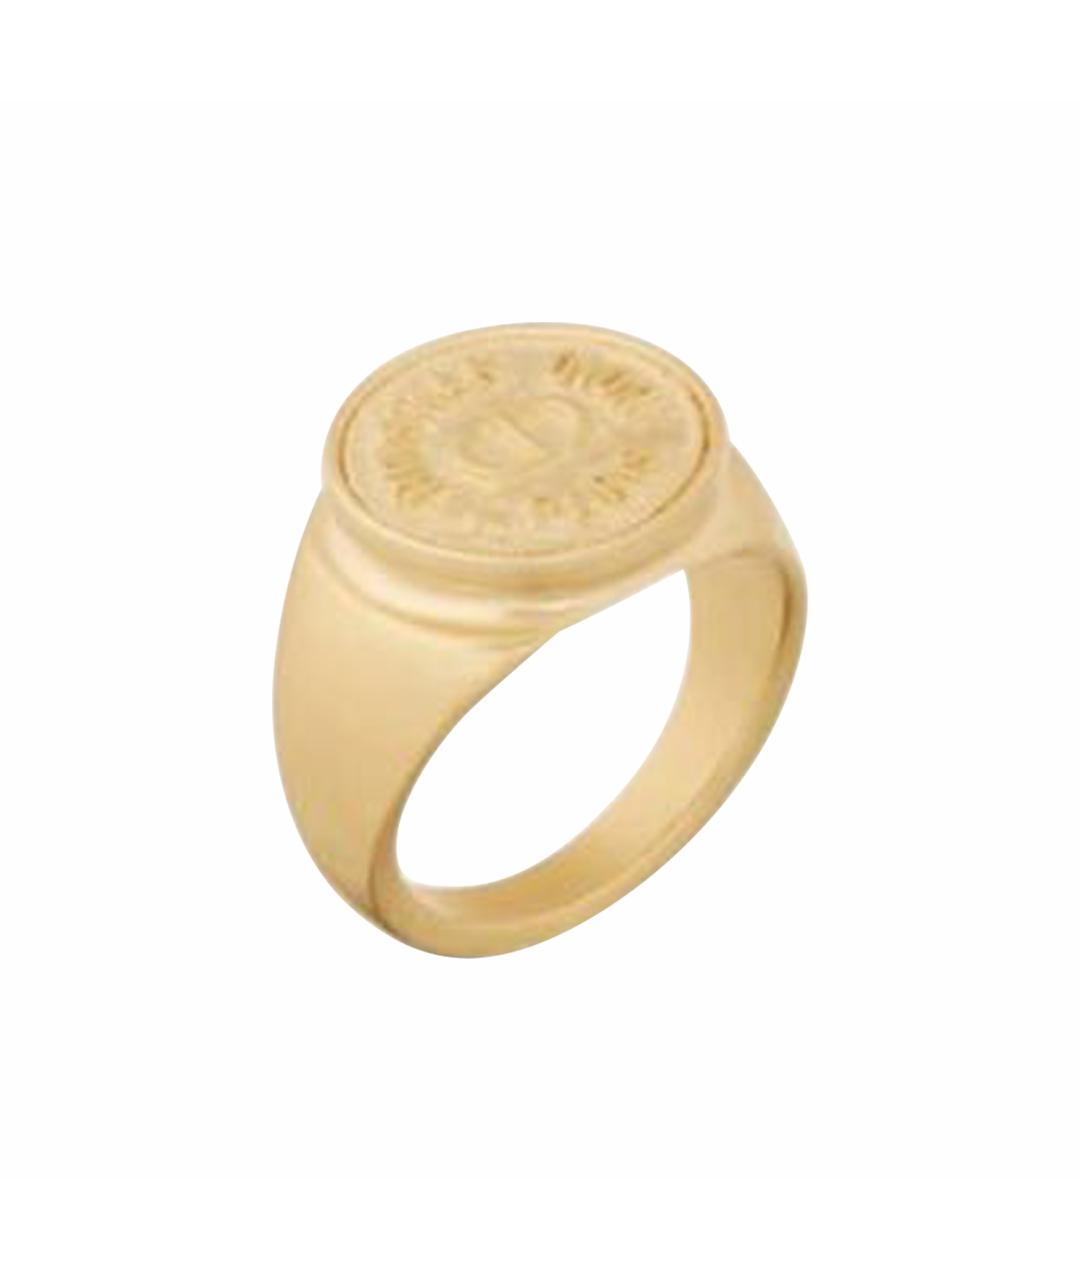 CHRISTIAN DIOR PRE-OWNED Золотое позолоченное кольцо, фото 1